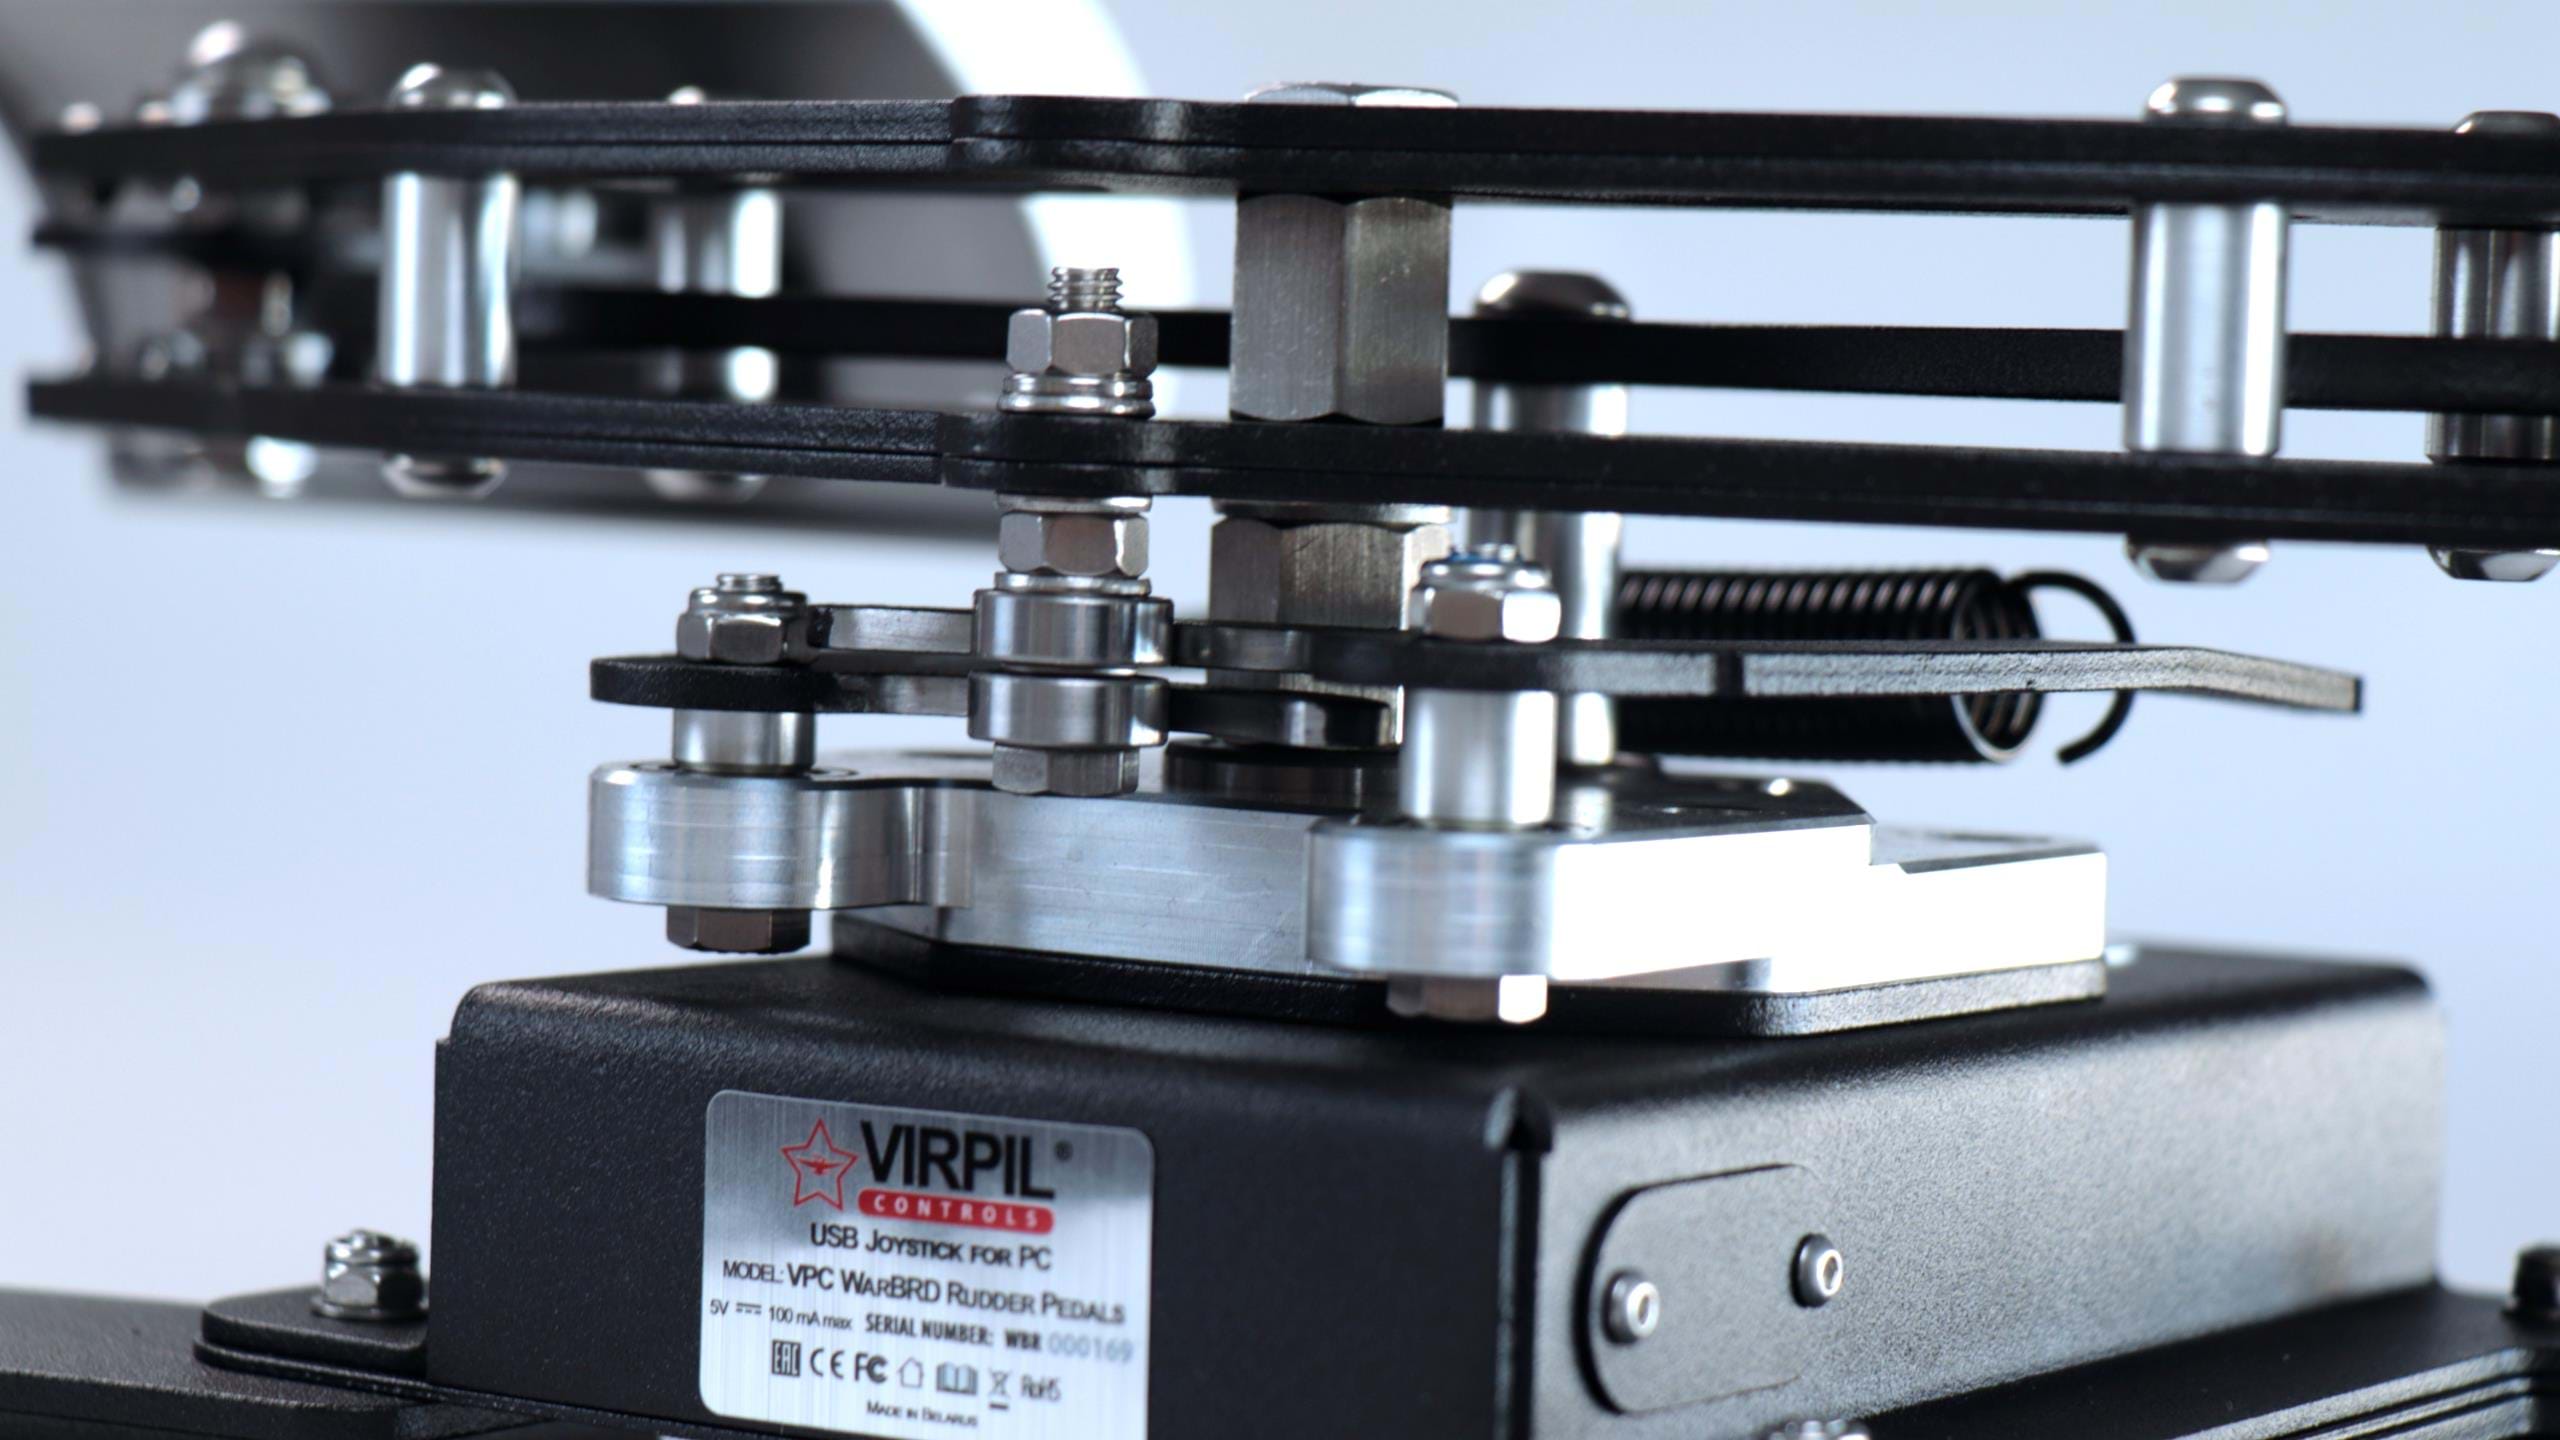 VIRPIL VPC WarBRD Rudder Pedals